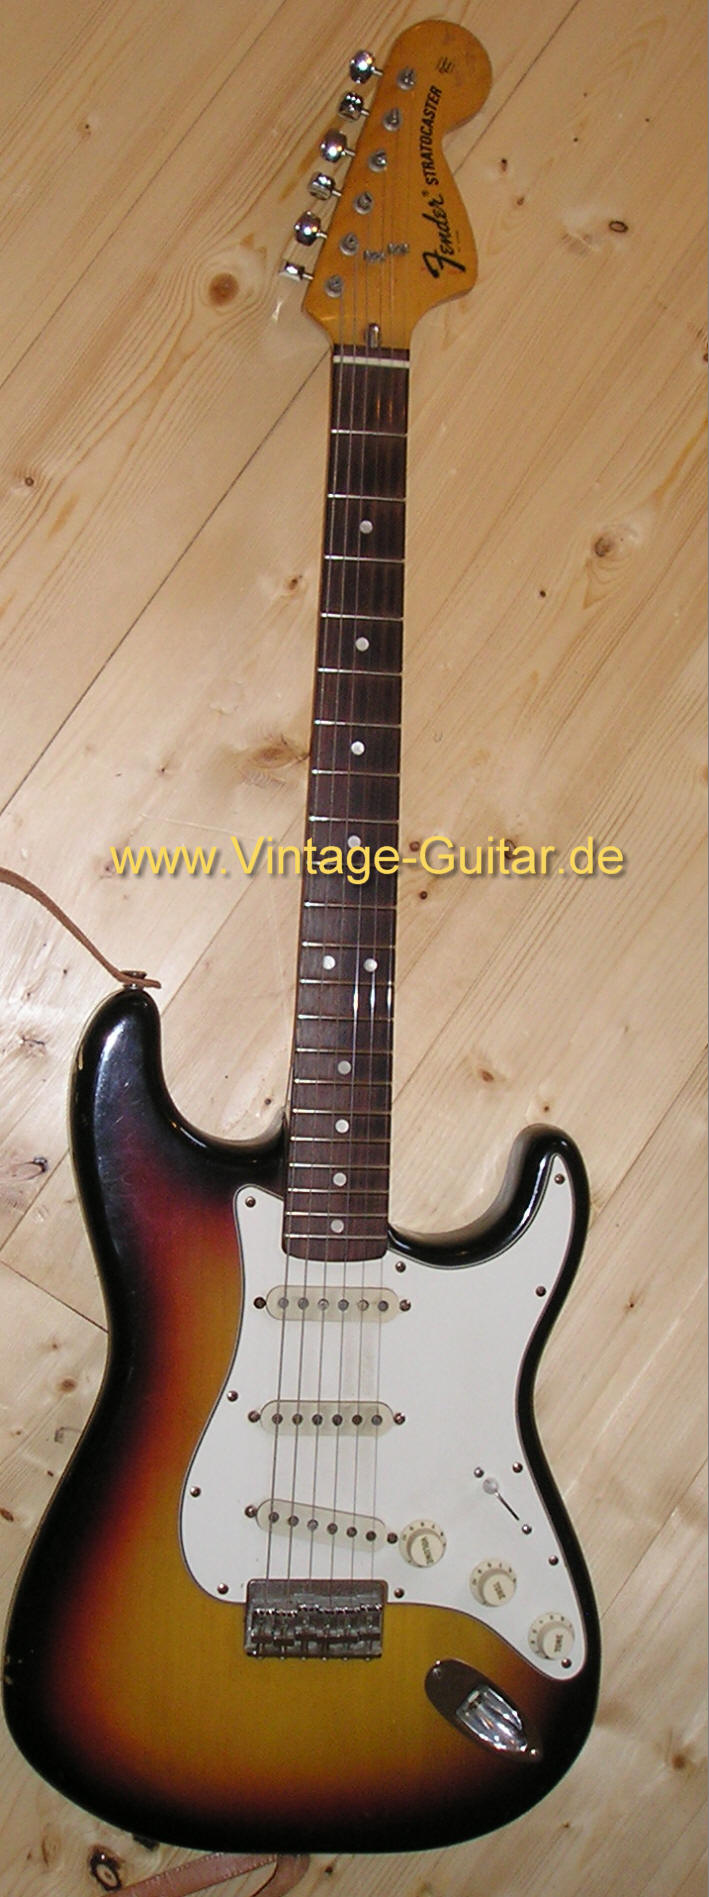 Fender Stratocaster 1974 sb nt a.jpg